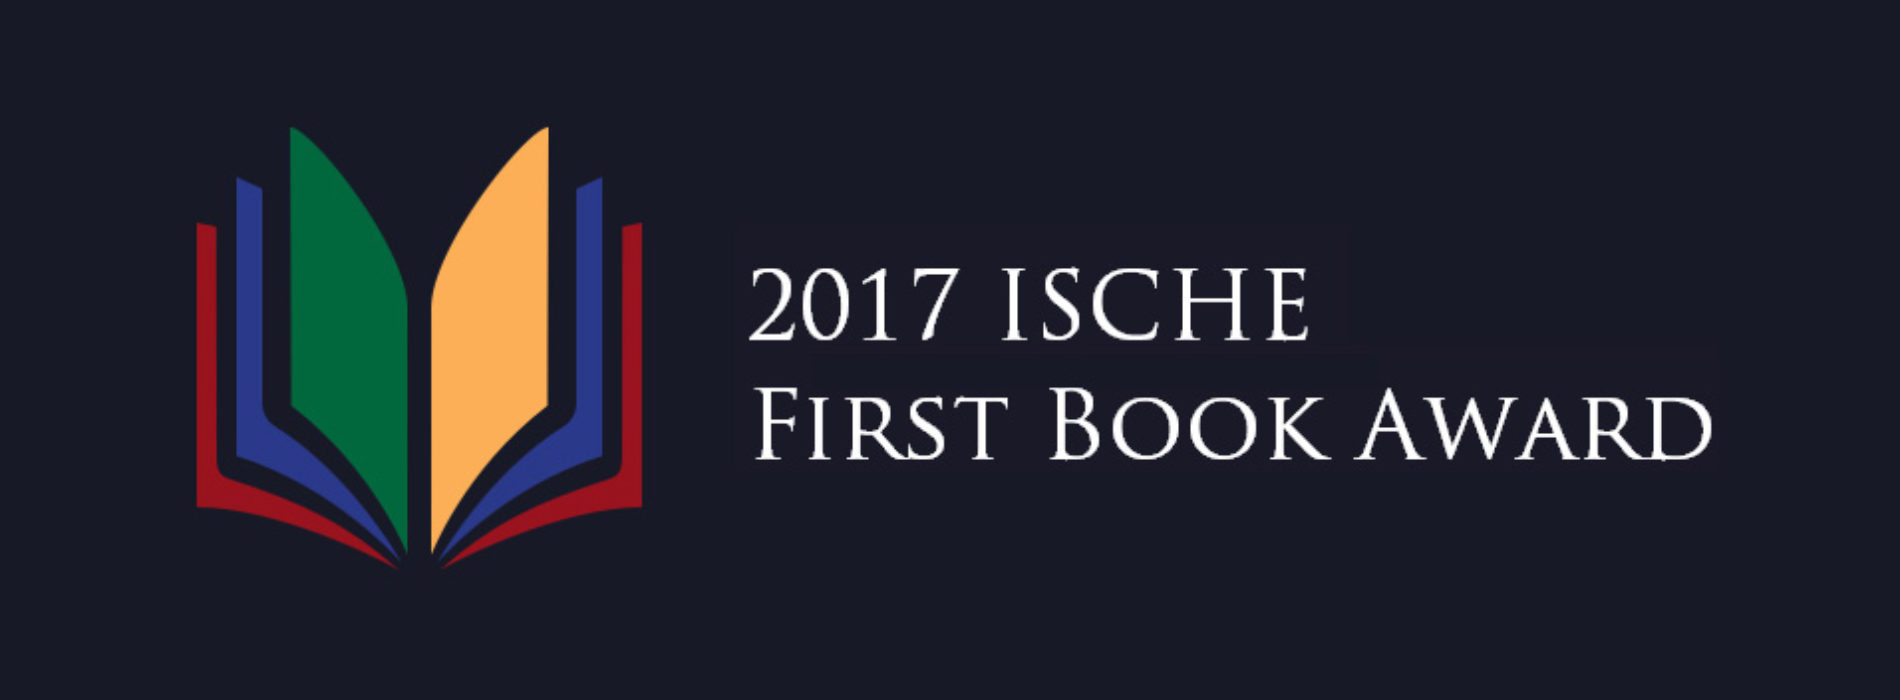 2017 First Book Award Announcement